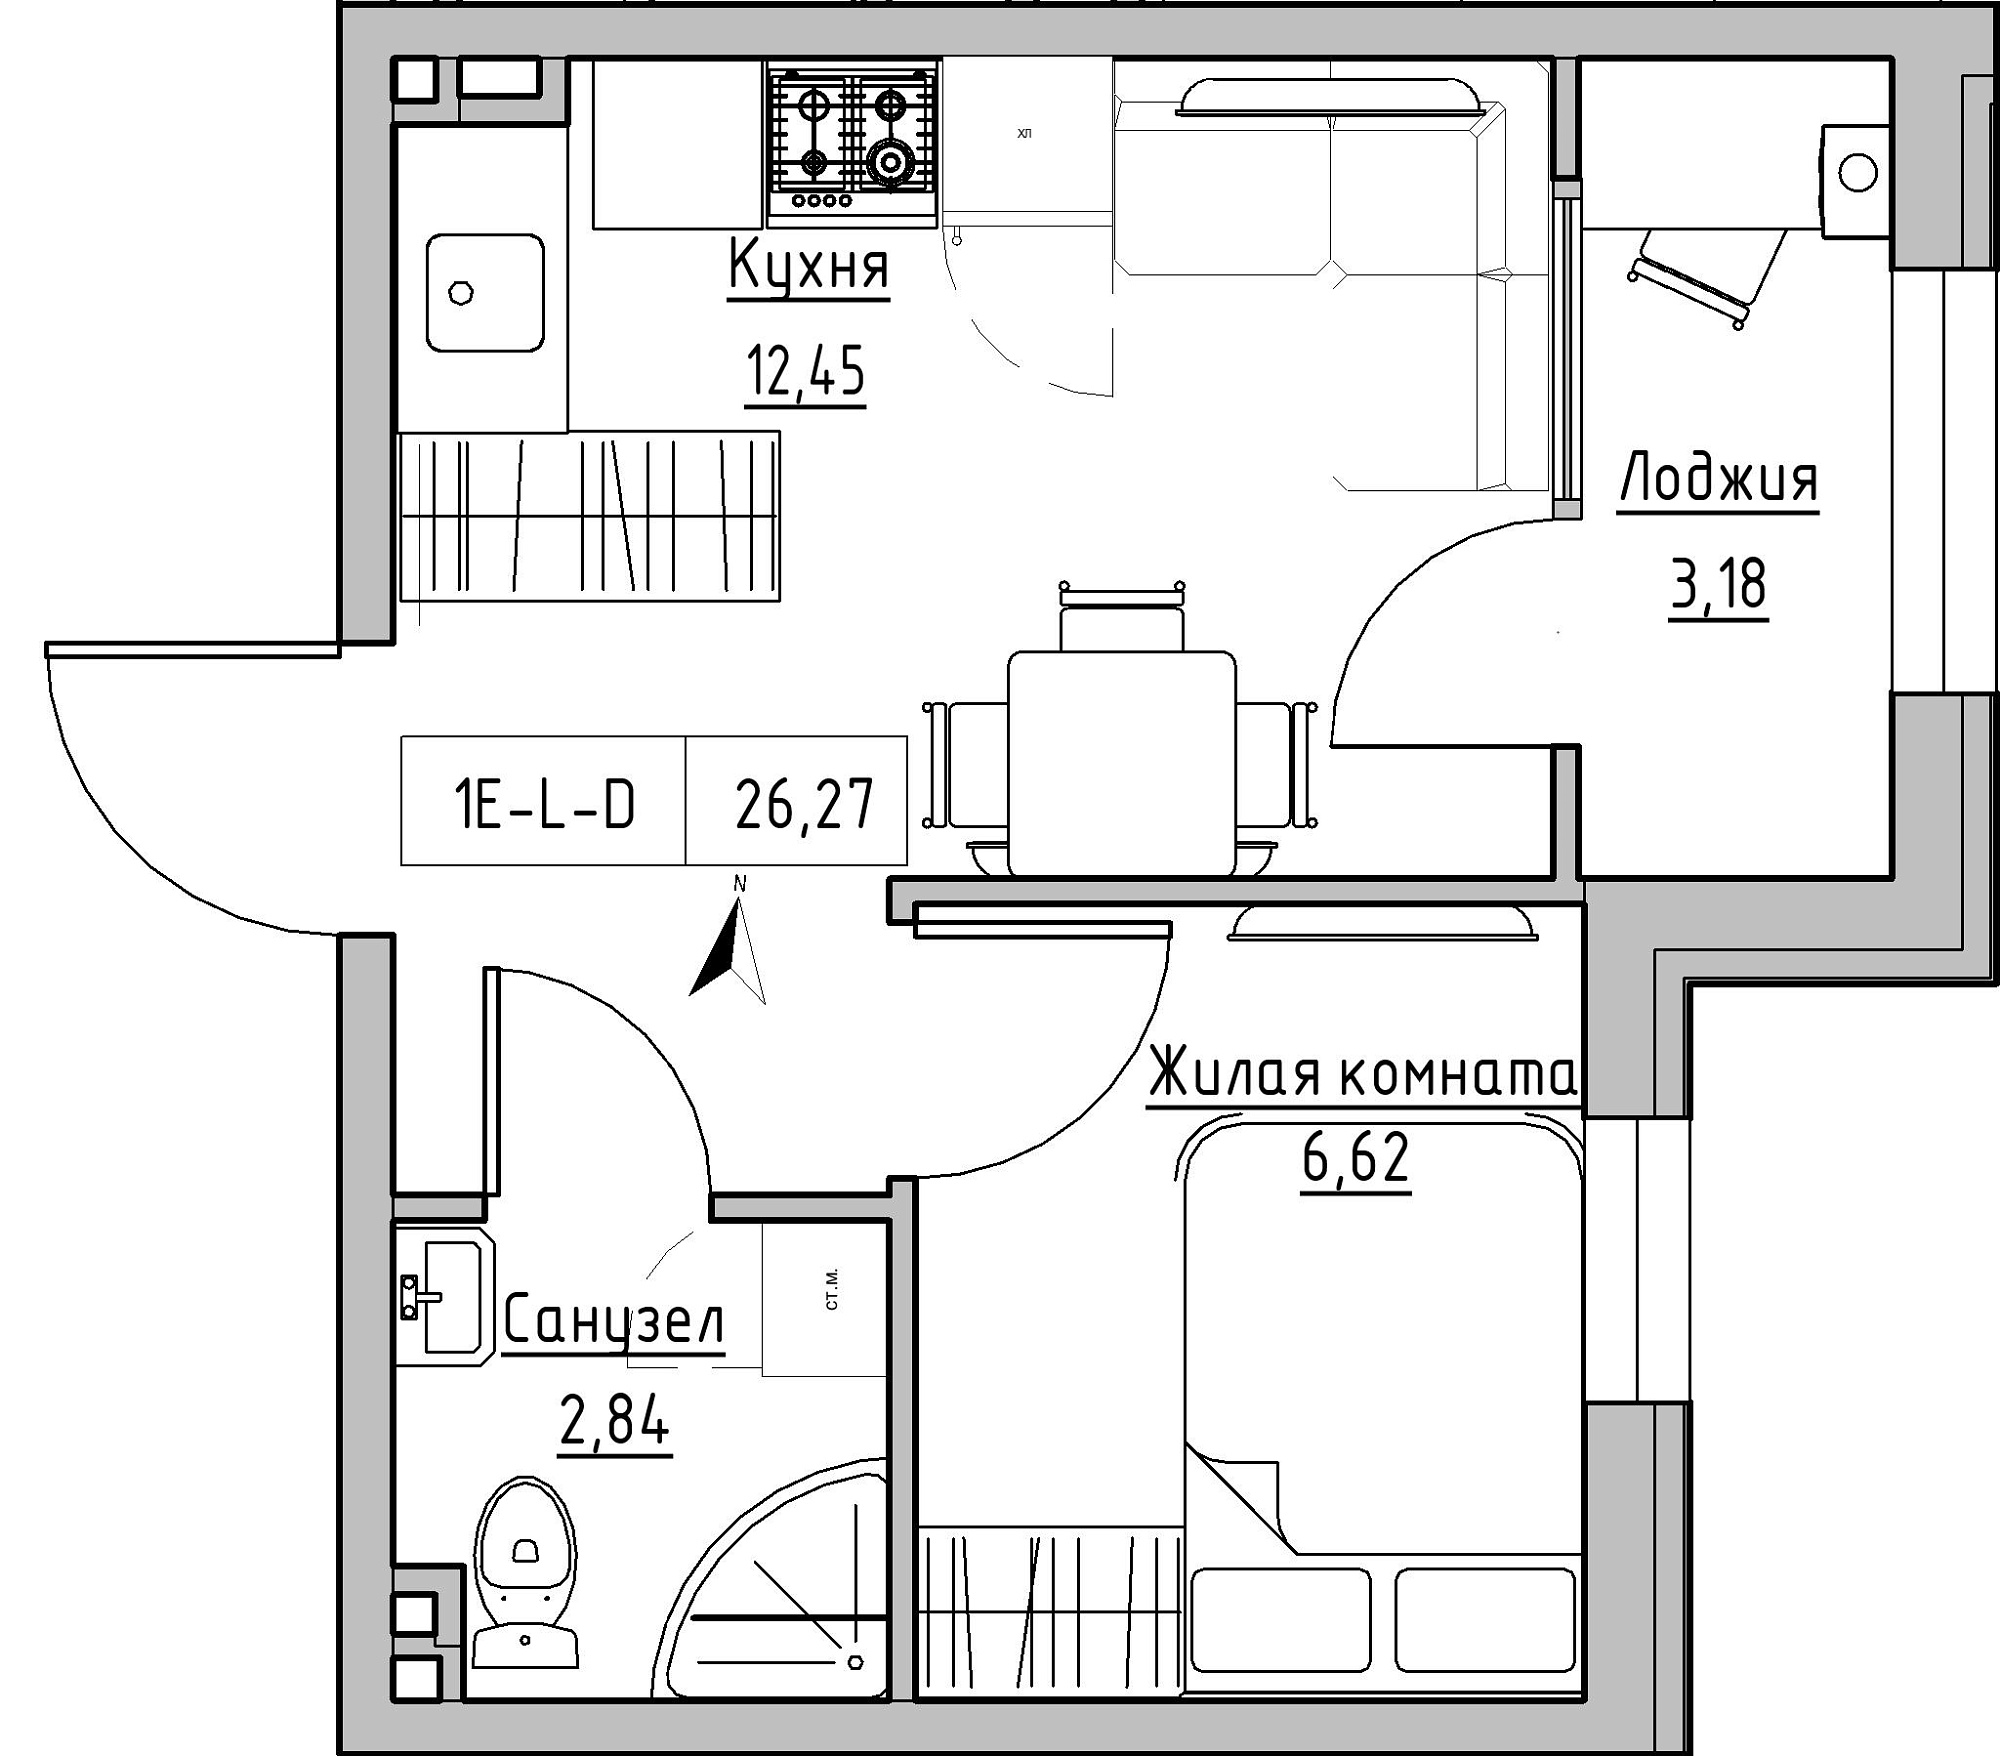 Планировка 1-к квартира площей 26.27м2, KS-024-01/0015.